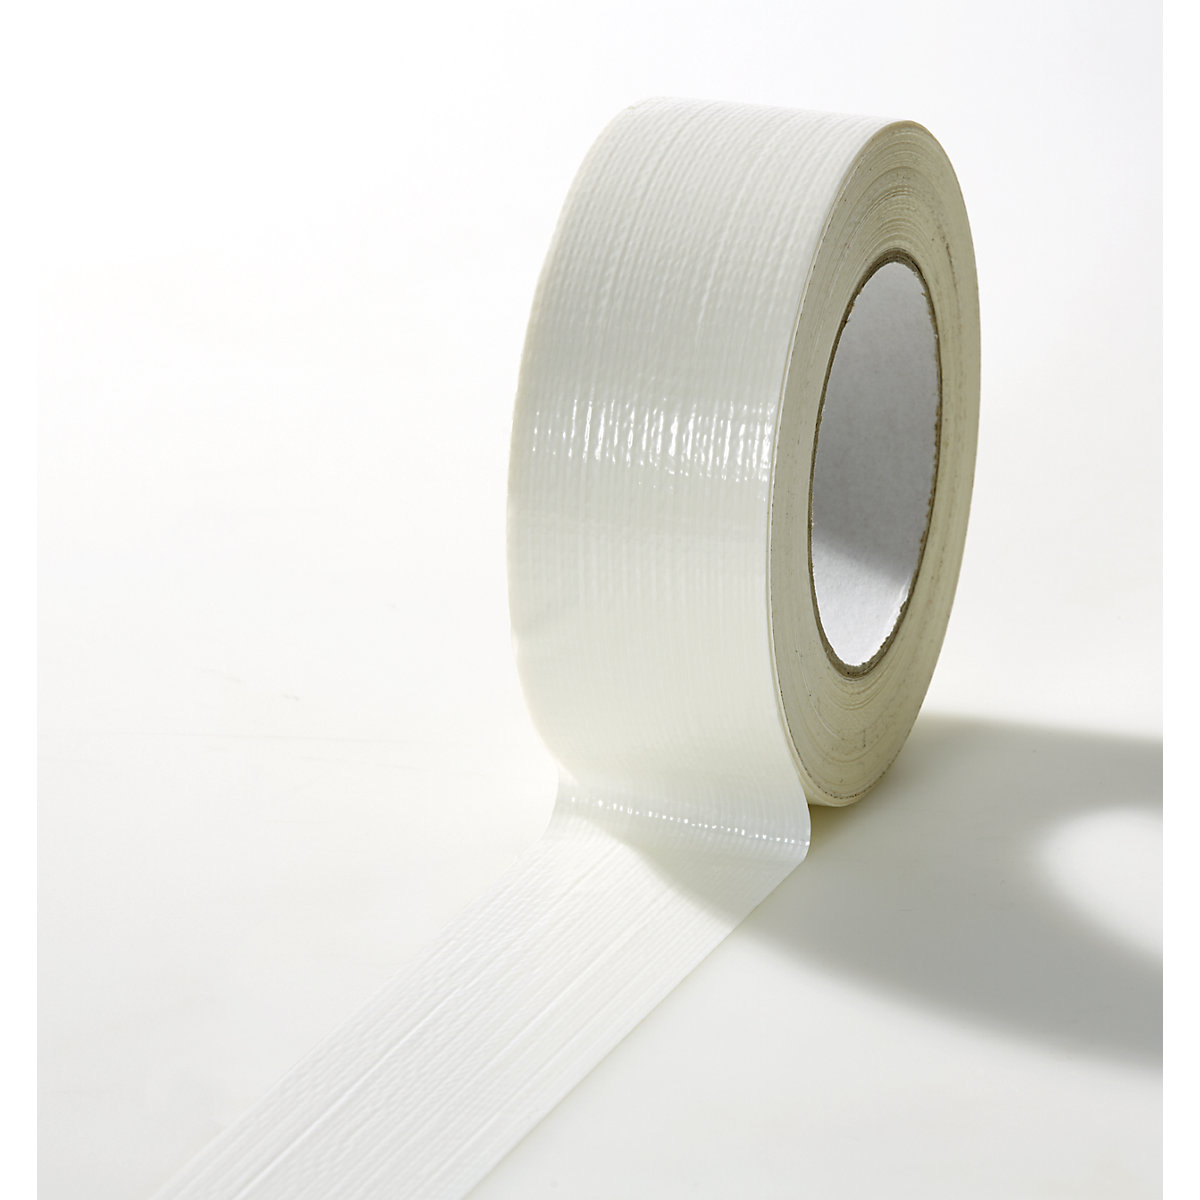 Tkaninová páska, v různých barvách, bal.j. 24 rolí, bílá, šířka pásky 38 mm-18